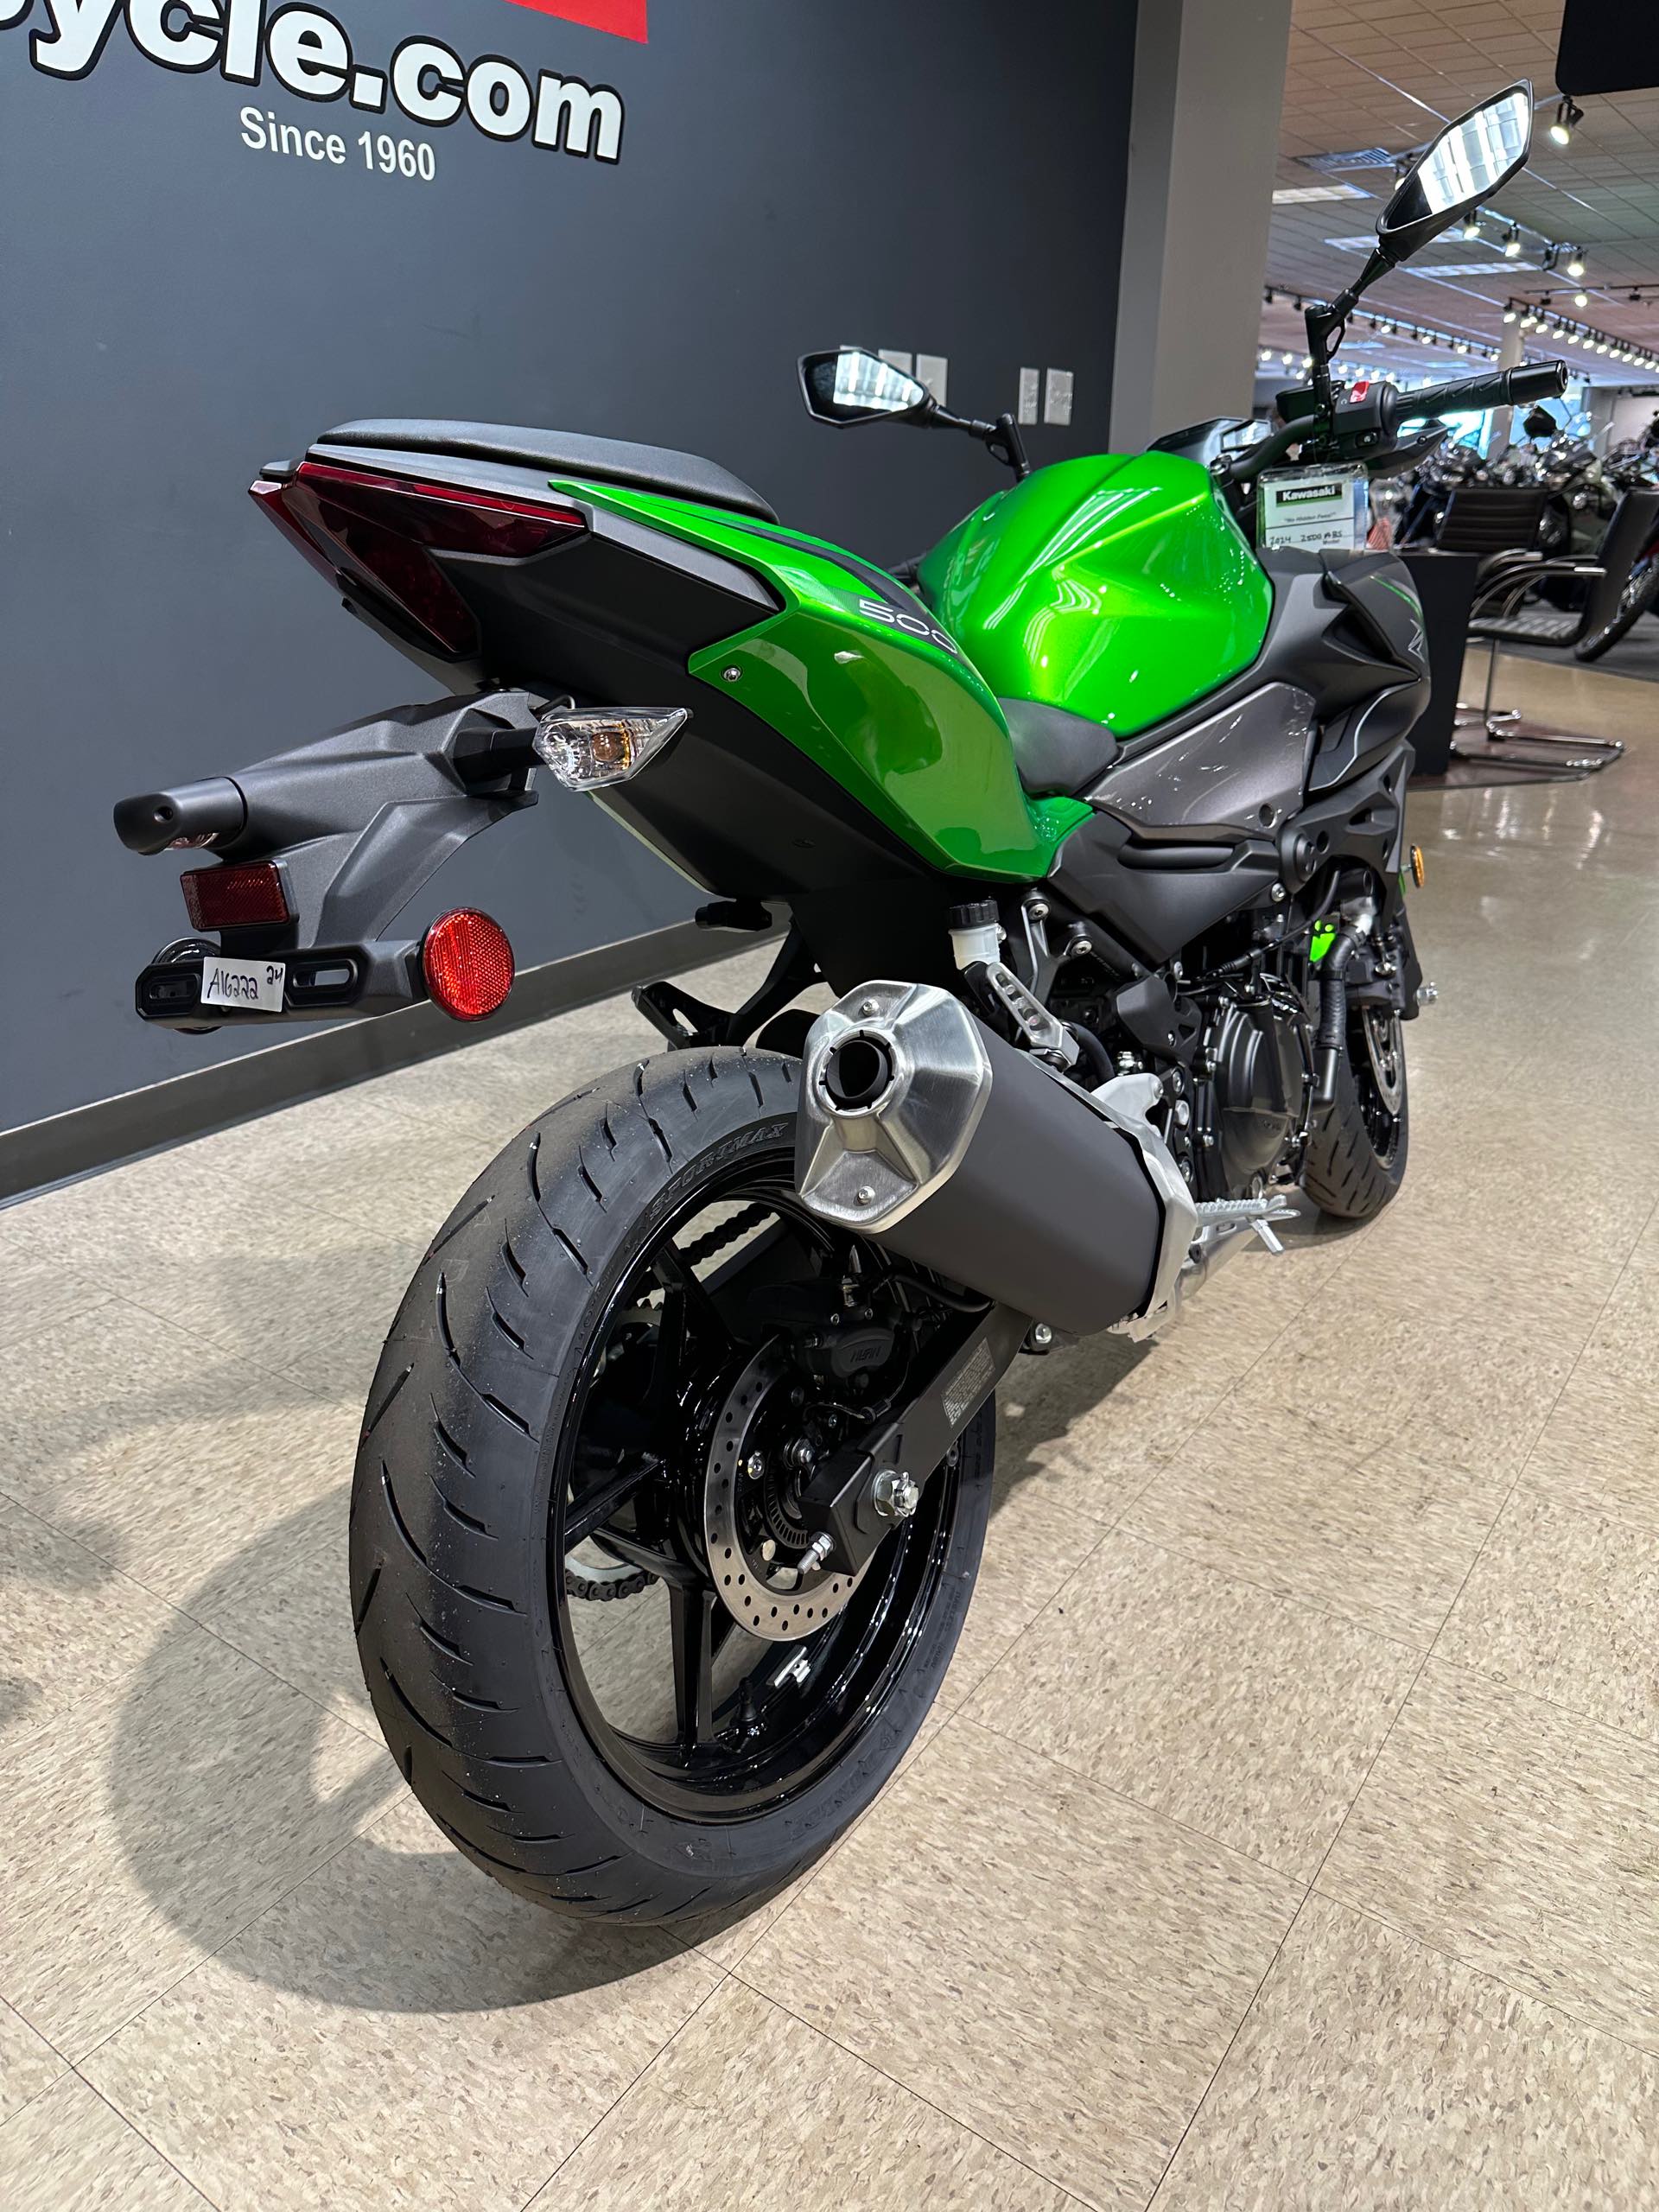 2024 Kawasaki Z500 ABS at Sloans Motorcycle ATV, Murfreesboro, TN, 37129